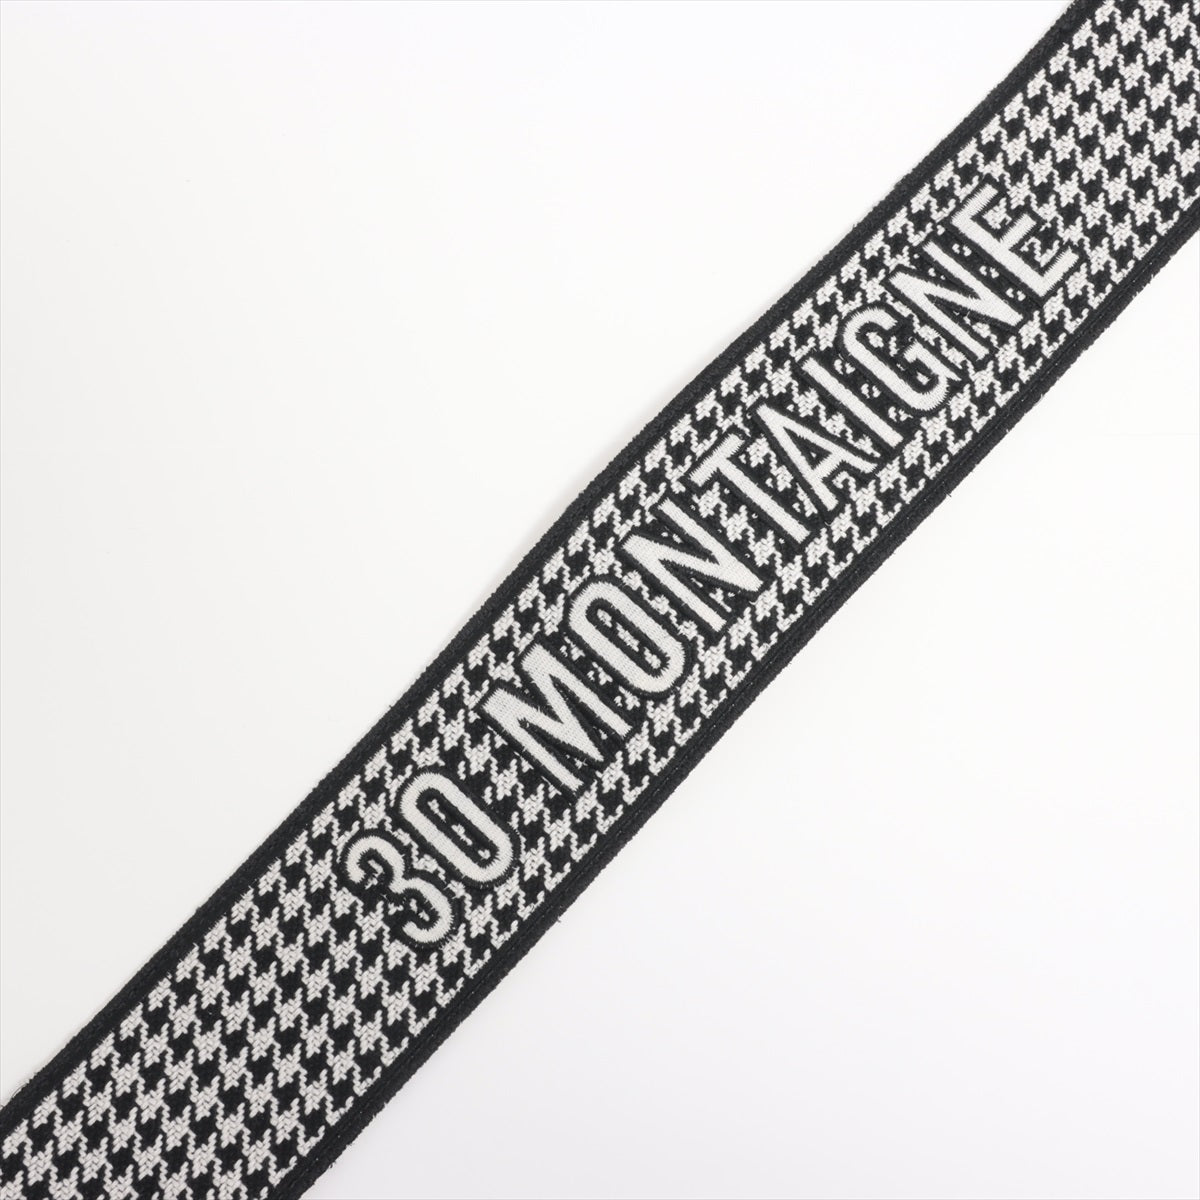 Dior 30 MONTAIGNE 30 Montaigne Shoulder strap Fabric Black × White Embroidery